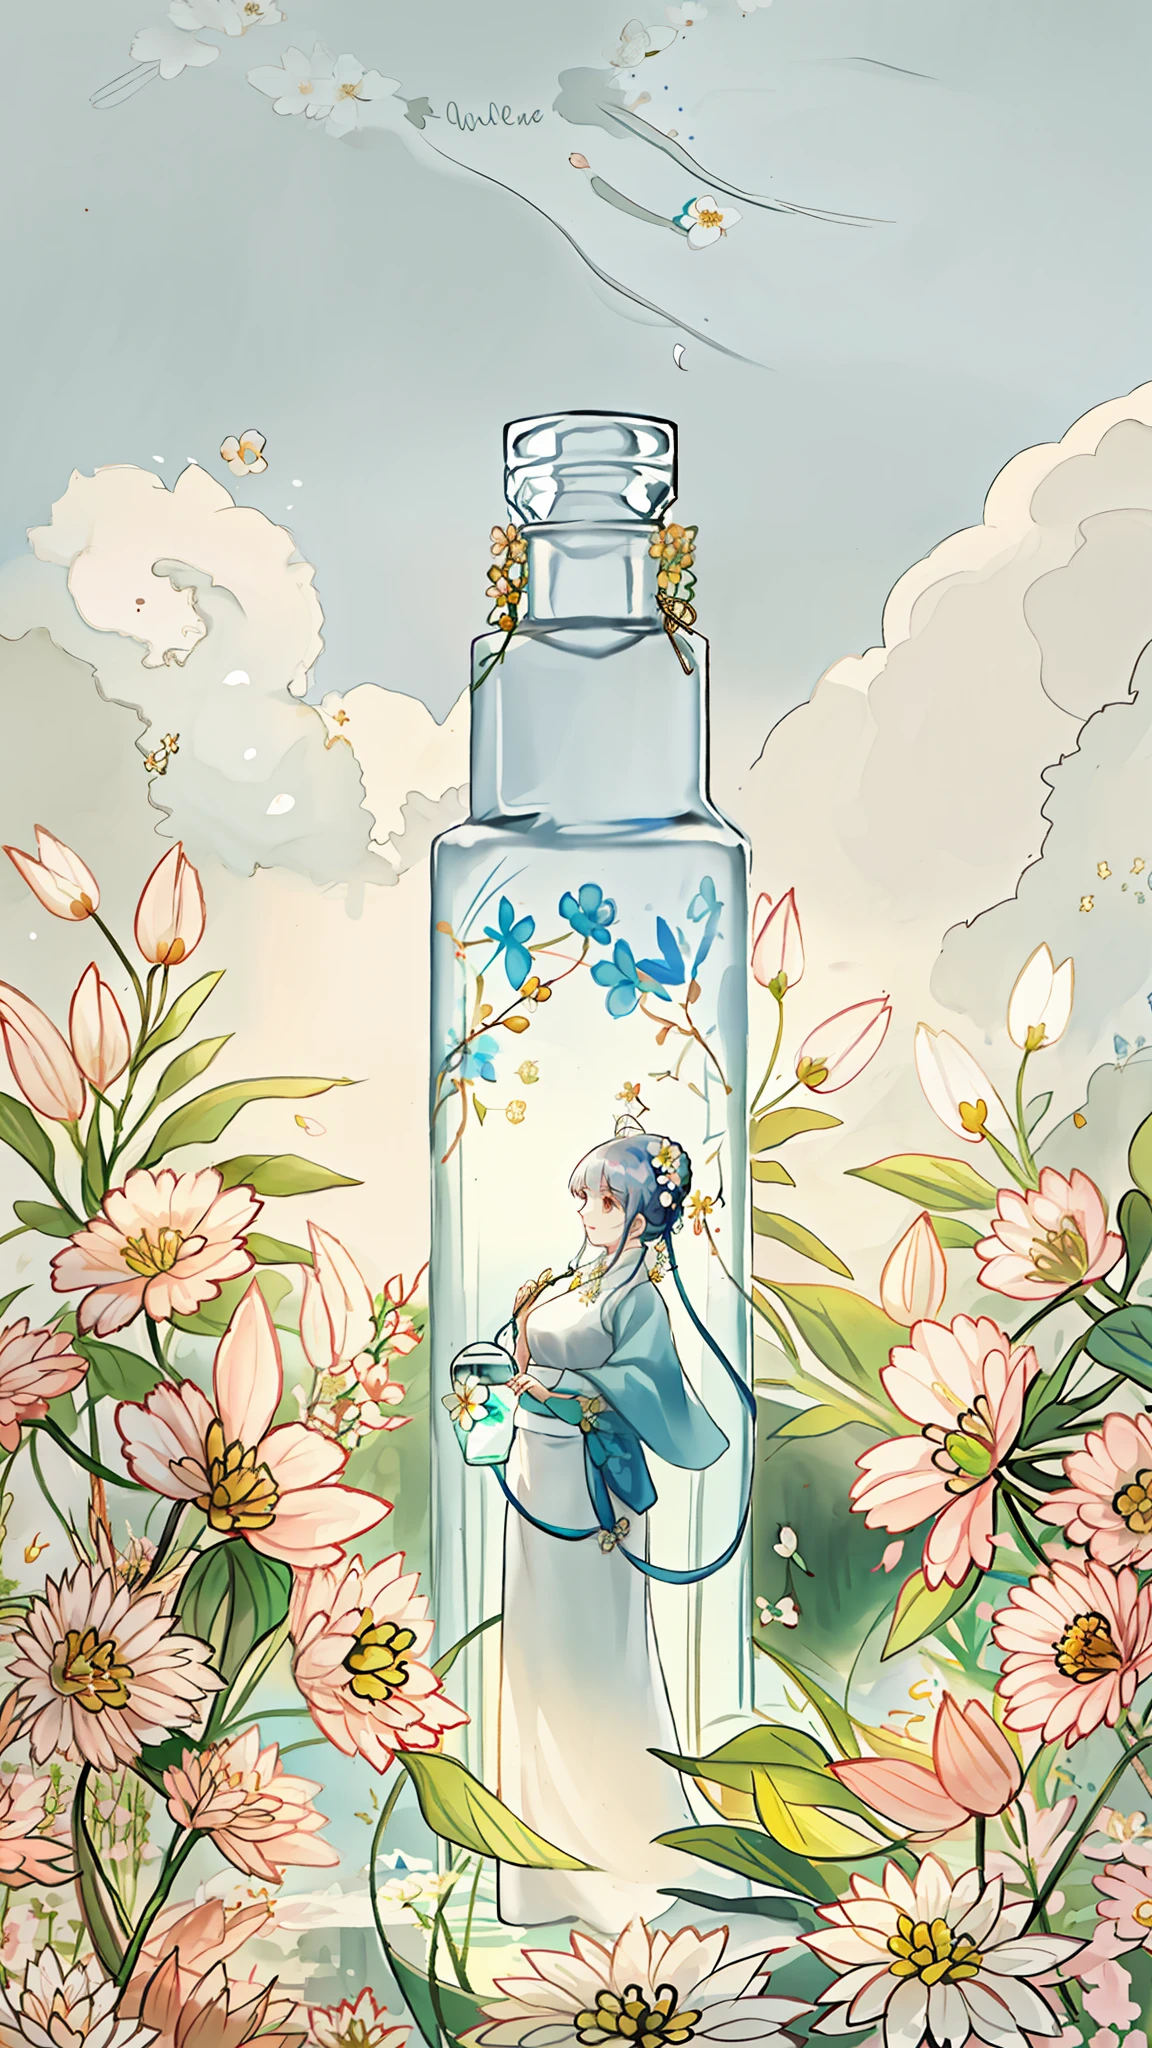 Eine weiße, runde Flasche, surrounded by Blumen, eine junge Frau steht neben der Flasche, Zartes Gesicht, Blumen, Farbe, Vitalität, Schönheit, Kontrast, Natur, Lebenskraft, Sonnenlicht. Schöne Atmosphäre, harmonische und komfortable Integration